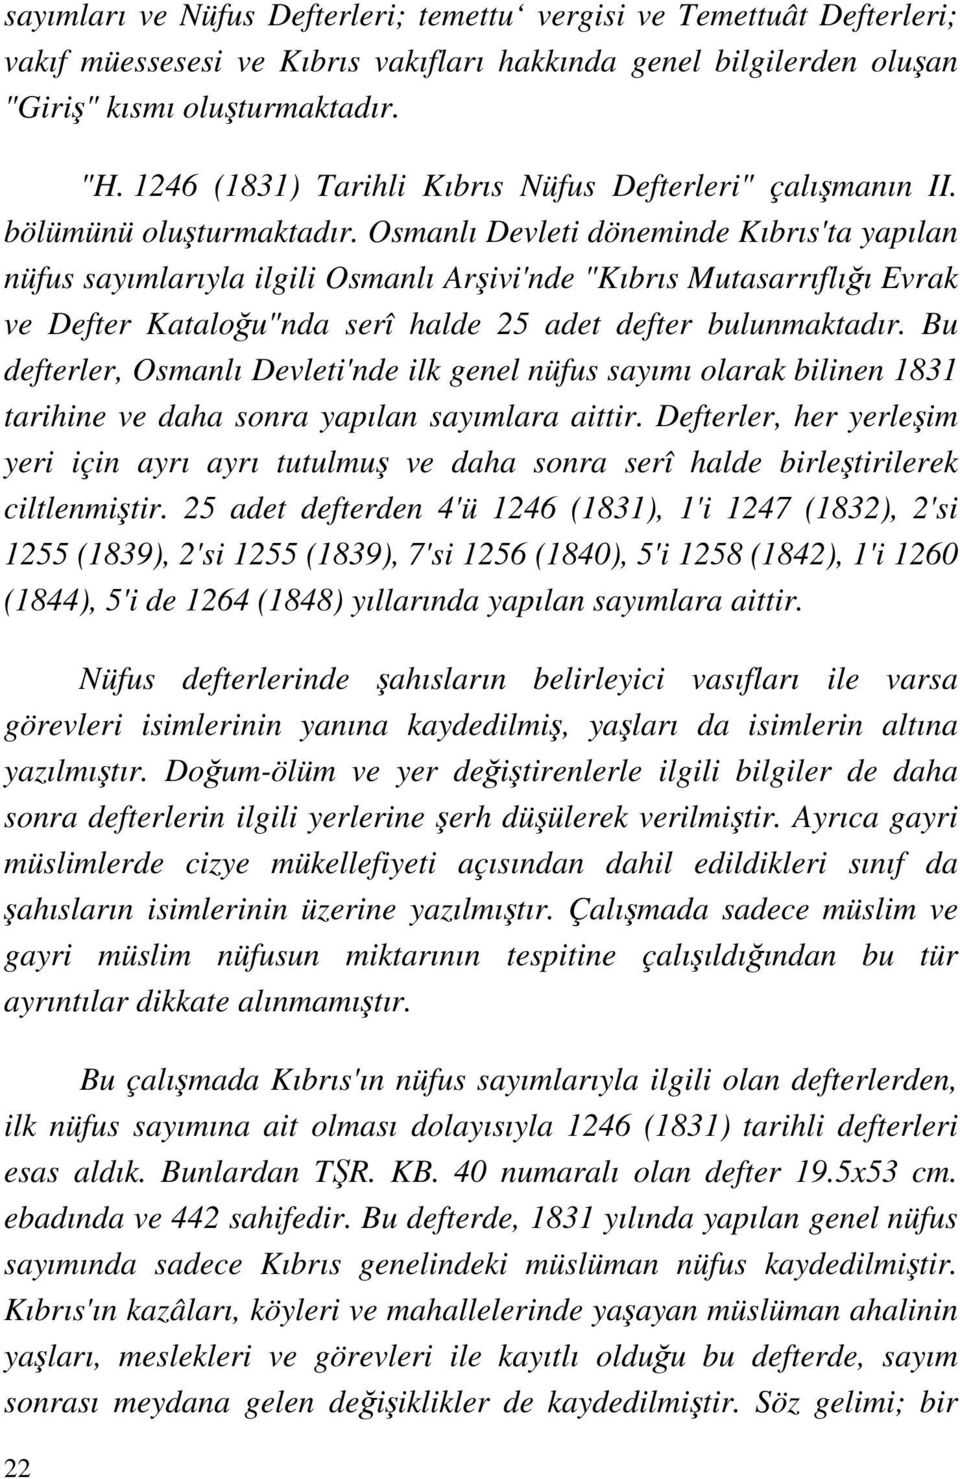 Osmanlı Devleti döneminde Kıbrıs'ta yapılan nüfus sayımlarıyla ilgili Osmanlı Arşivi'nde "Kıbrıs Mutasarrıflığı Evrak ve Defter Kataloğu"nda serî halde 25 adet defter bulunmaktadır.